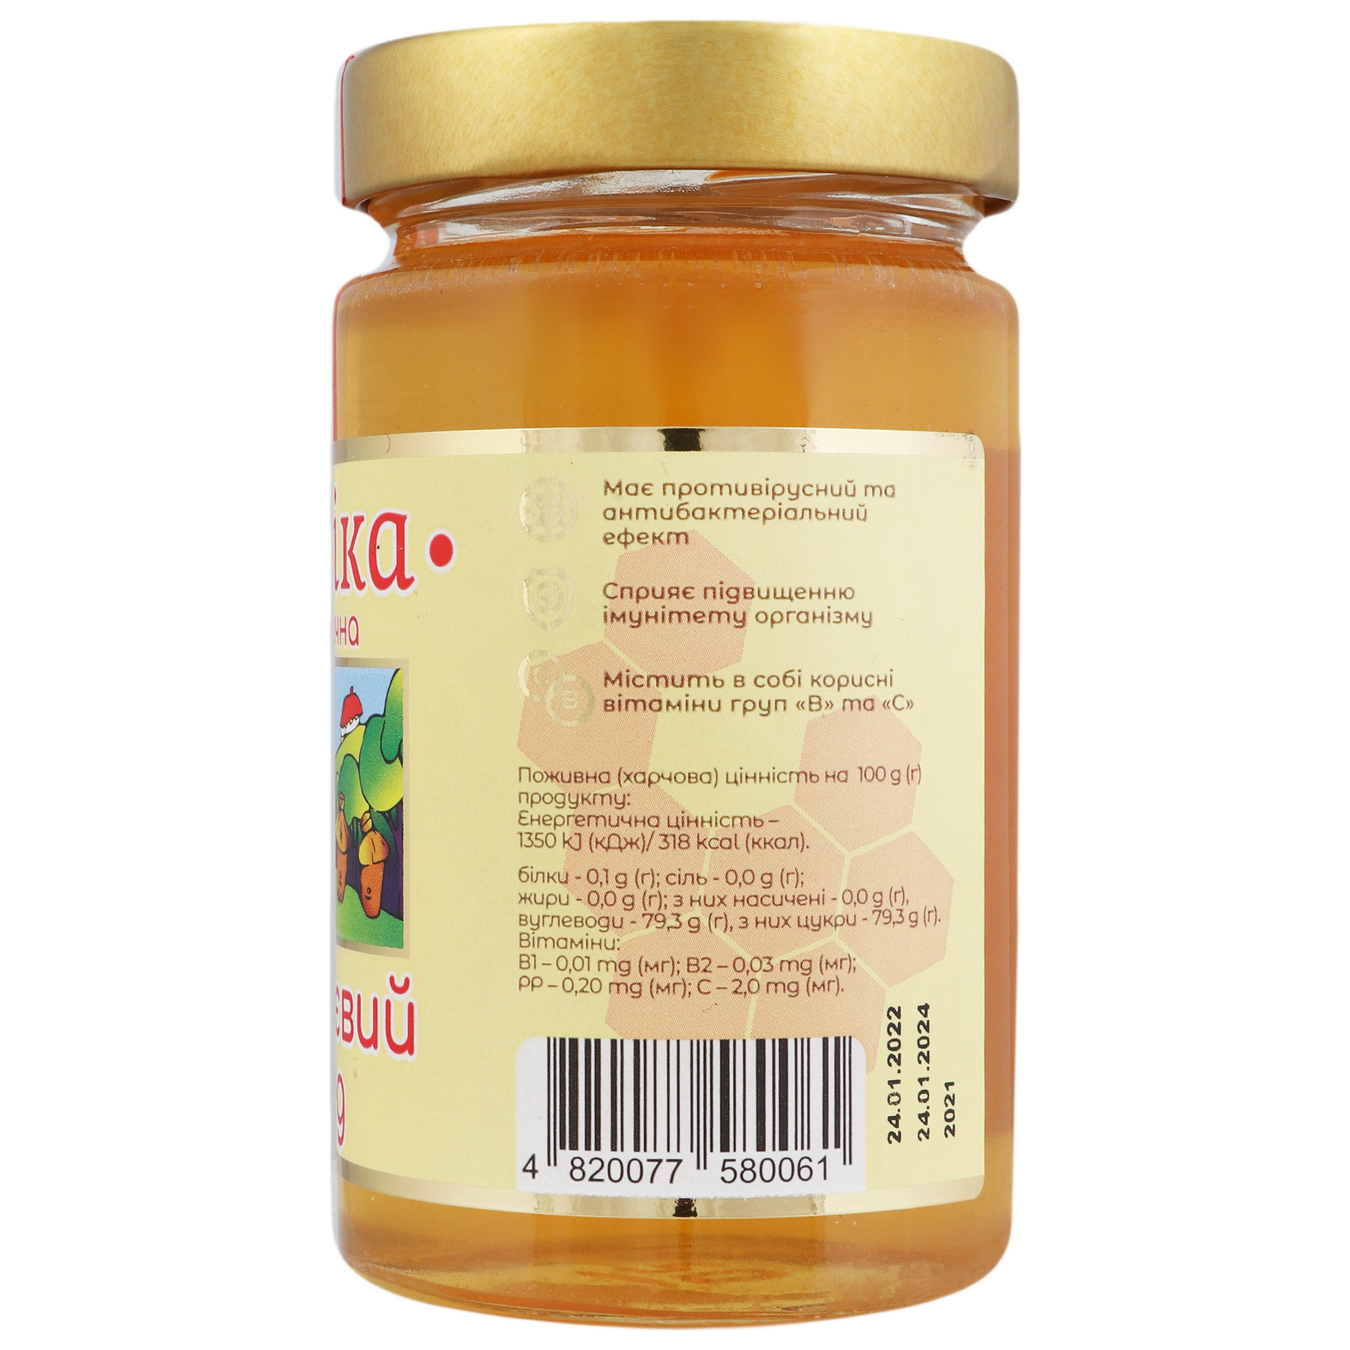 Acacia honey Pasika natural glass jar 400g 4